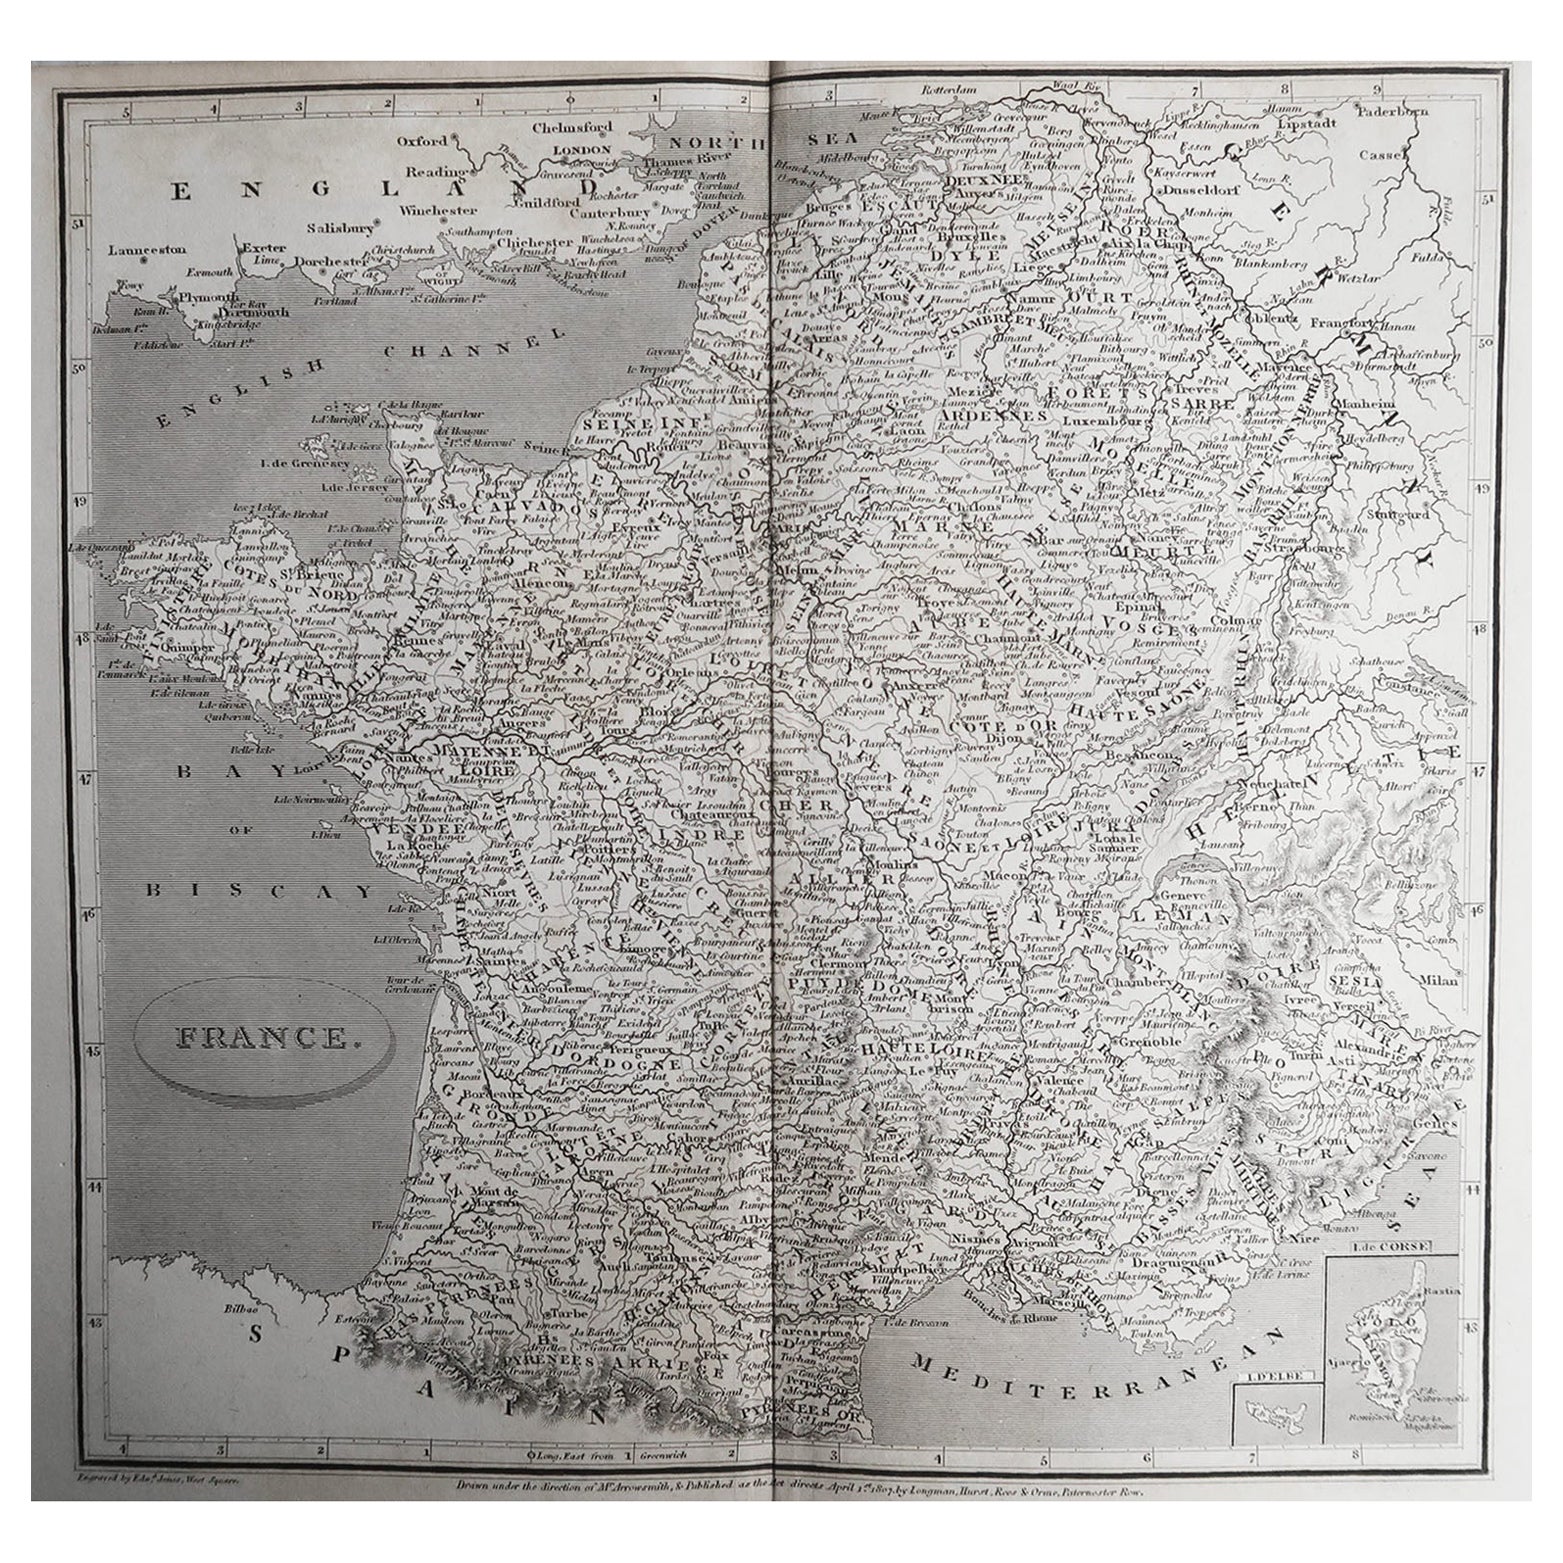 Carte ancienne de France, orfèvre, 1820